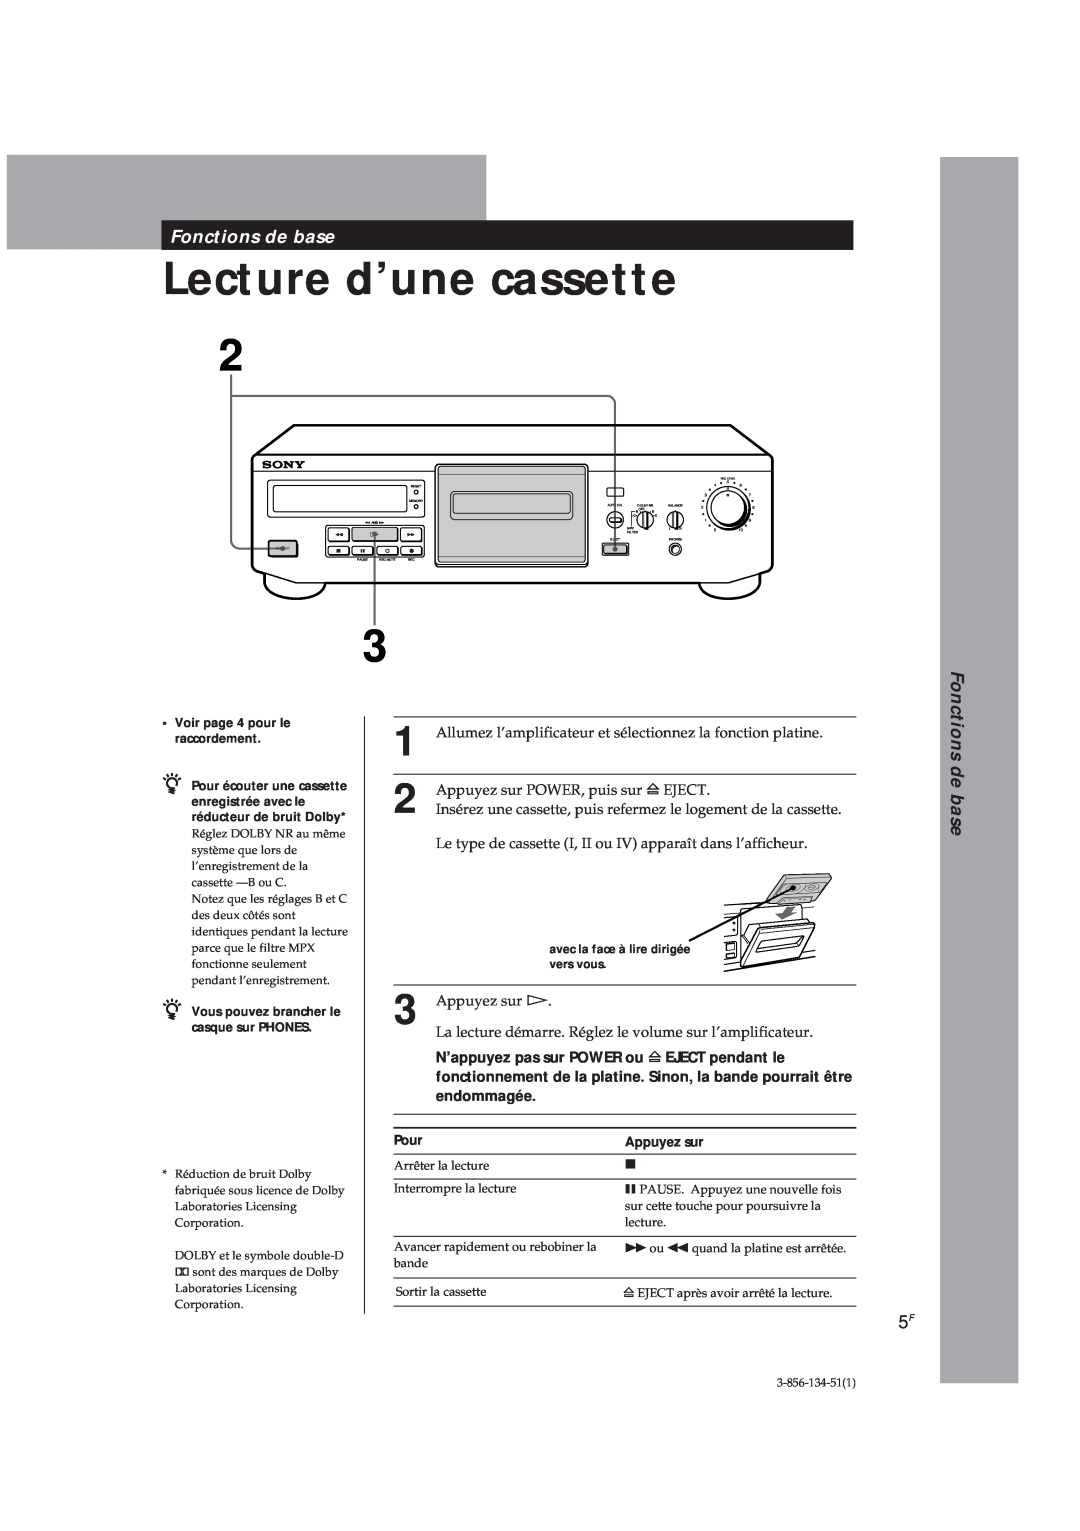 Sony TC-KE300 operating instructions Lecture d’une cassette, Fonctions de base 